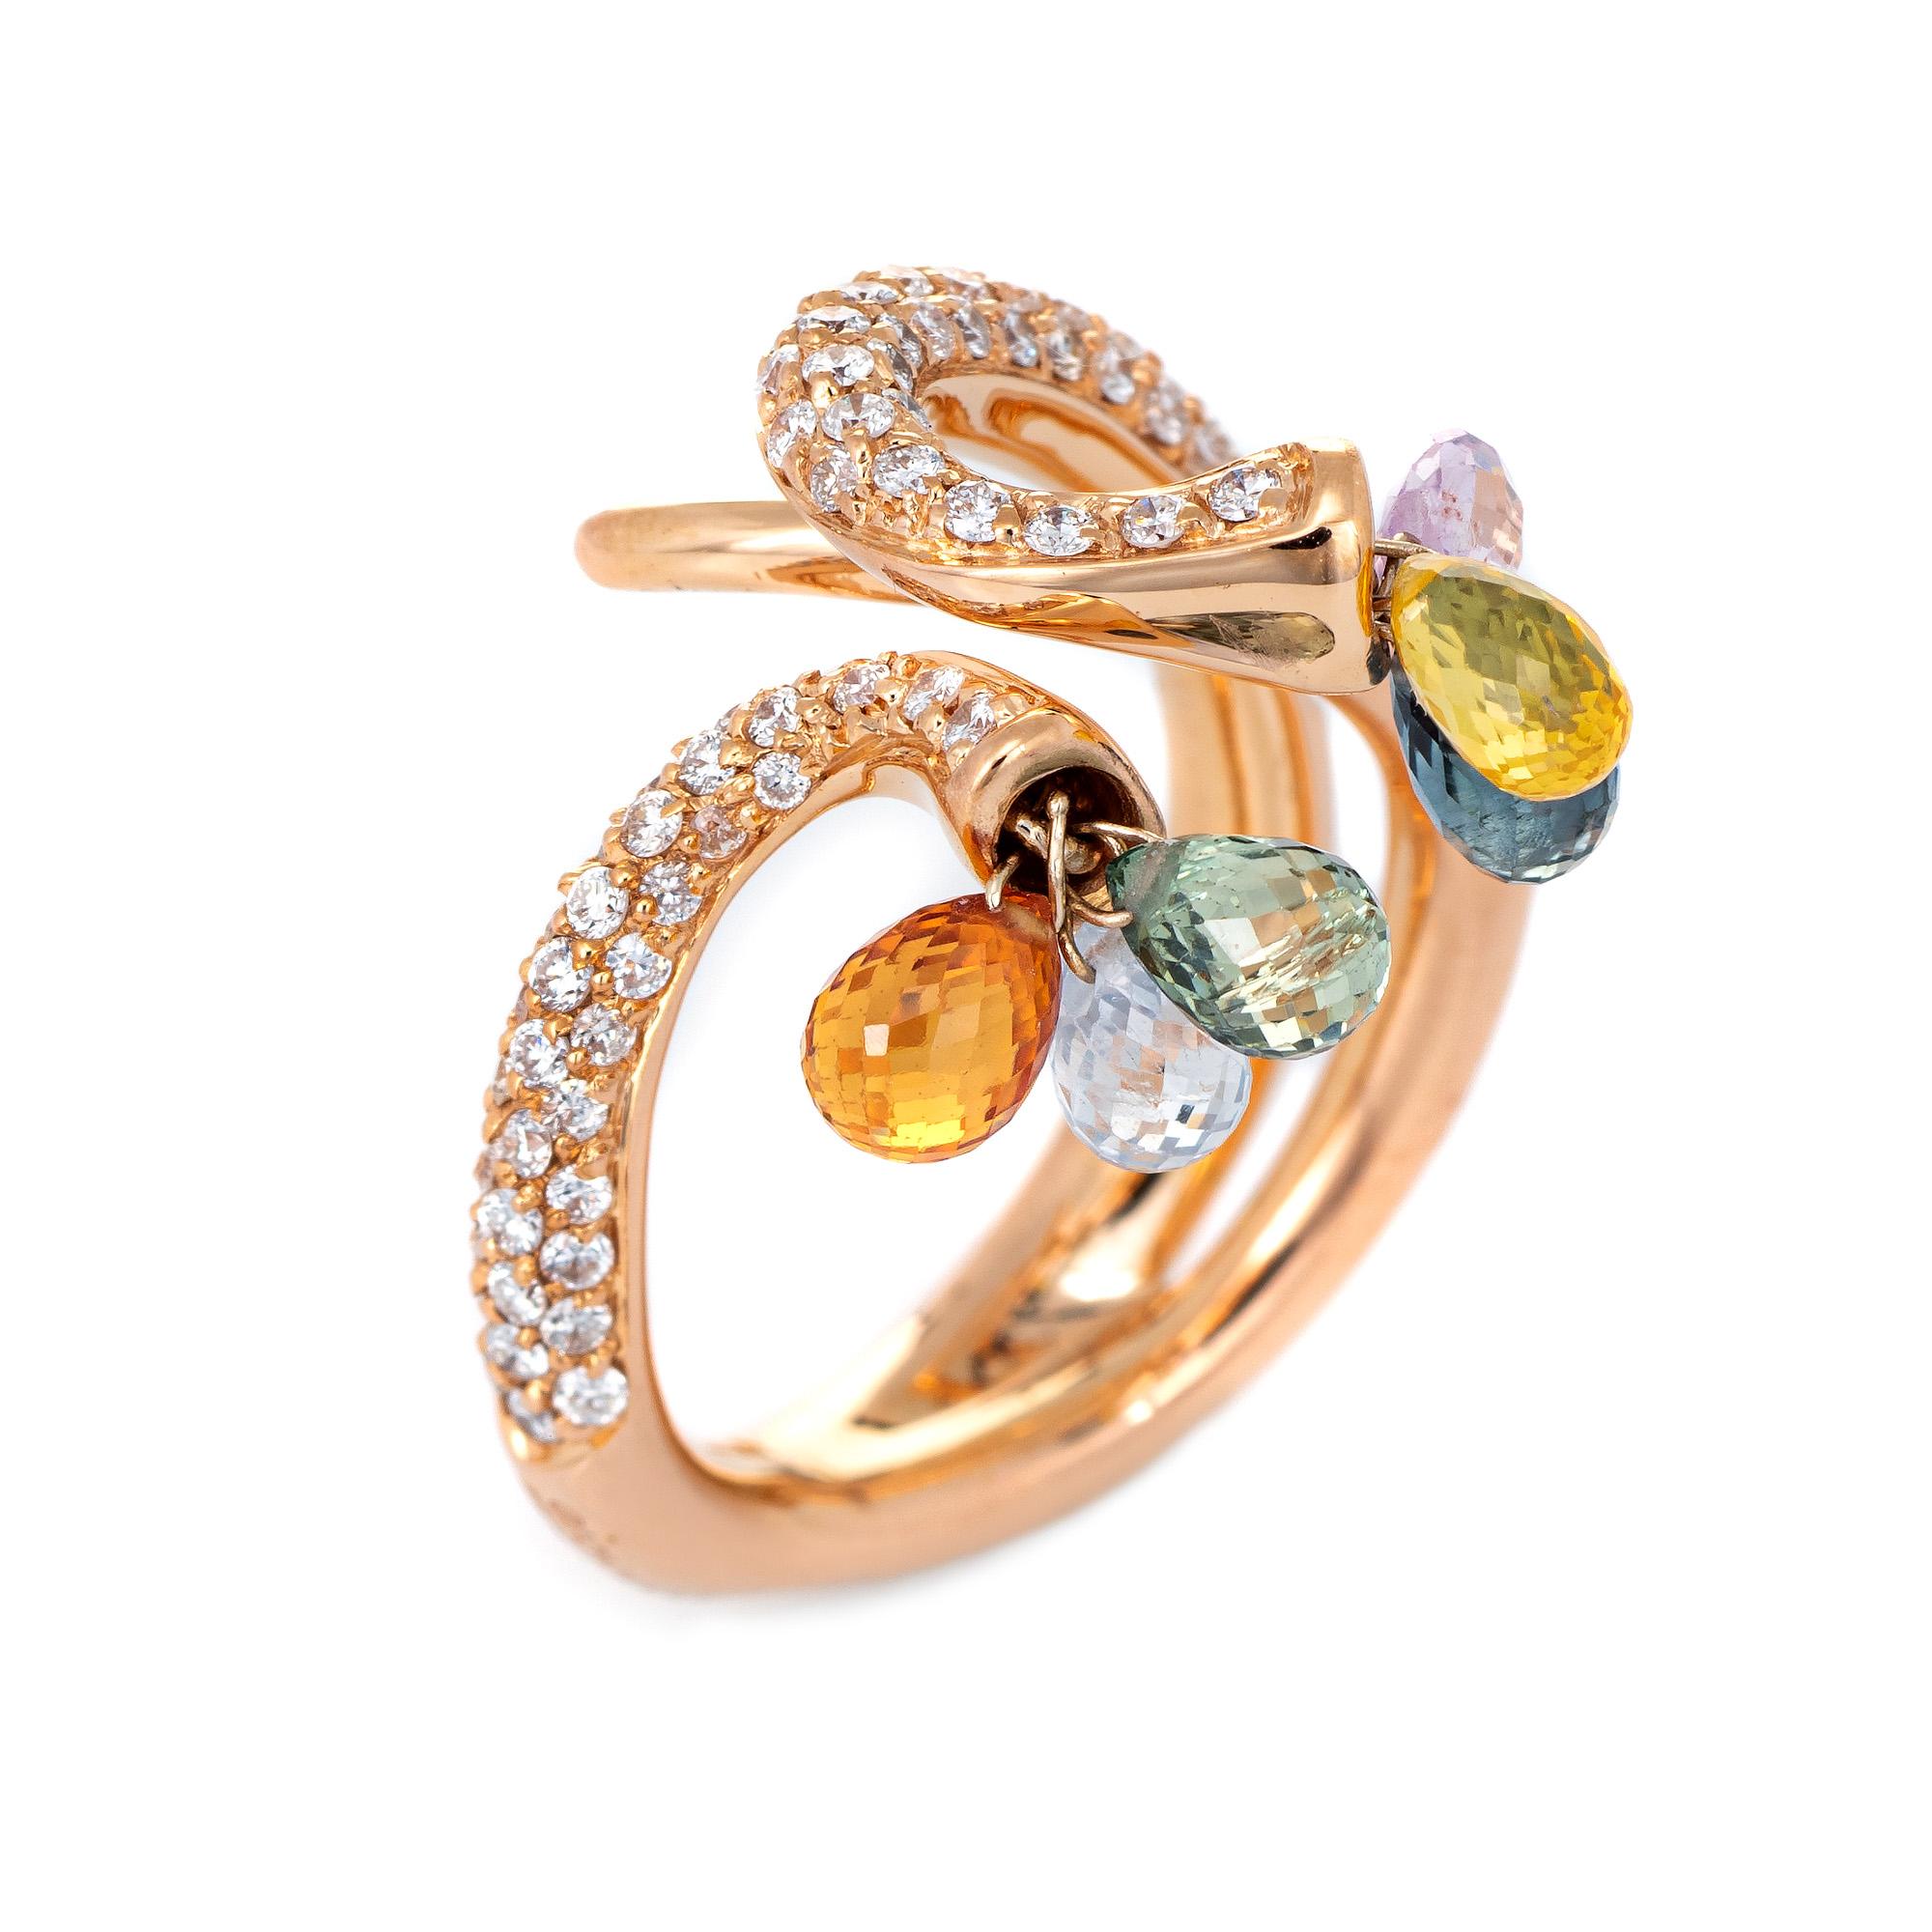 Élégant bracelet Giovanni Ferraris en or rose 18 carats, pavé de diamants et de saphirs arc-en-ciel (circa 2000). 

Les diamants sont sertis en pavé dans la bande et totalisent environ 1 carat (couleur estimée G-H et clarté VS2-SI1). Les saphirs